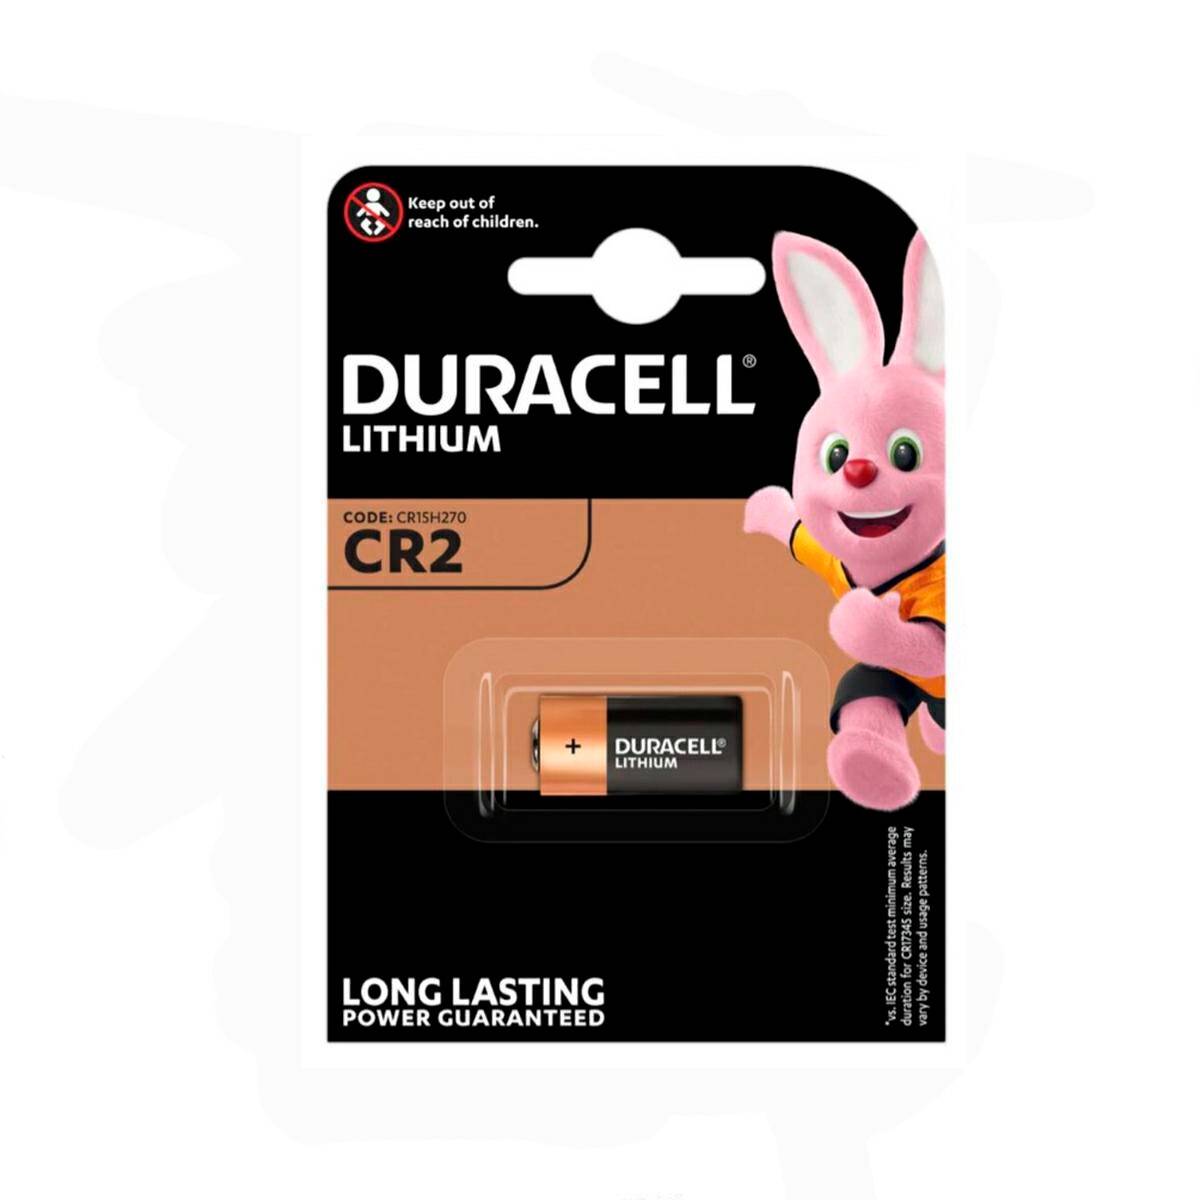 Batterie Duracell CR2 CR15H270 3V 1 stck